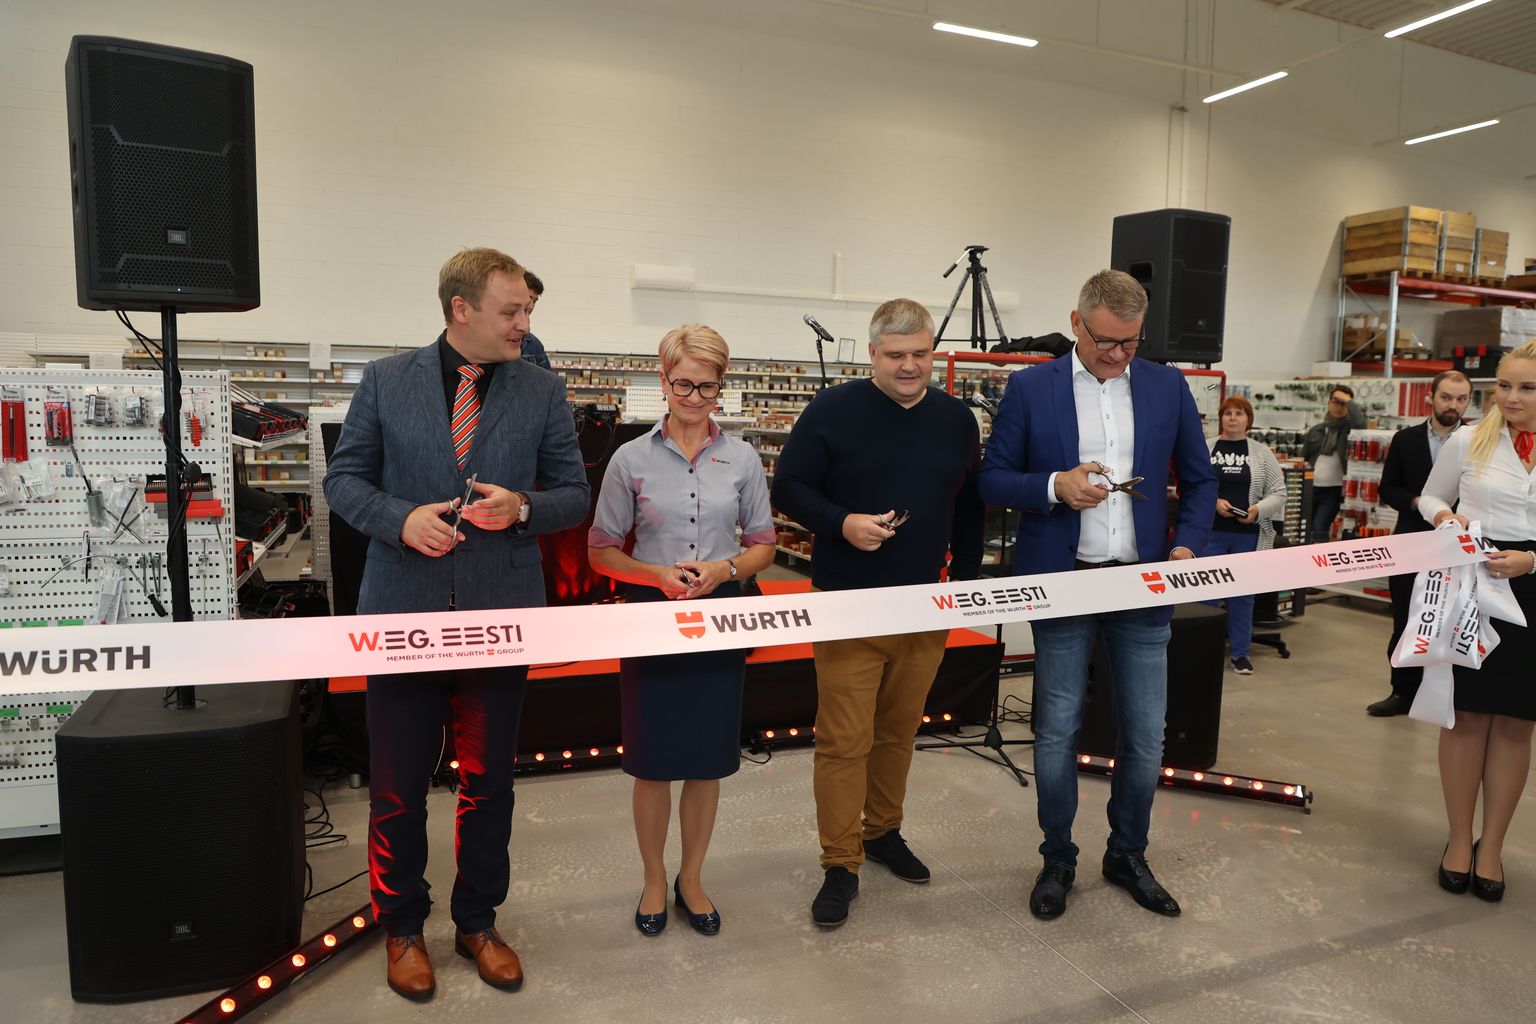 W.EG. Eesti ja Würth avamine Paides